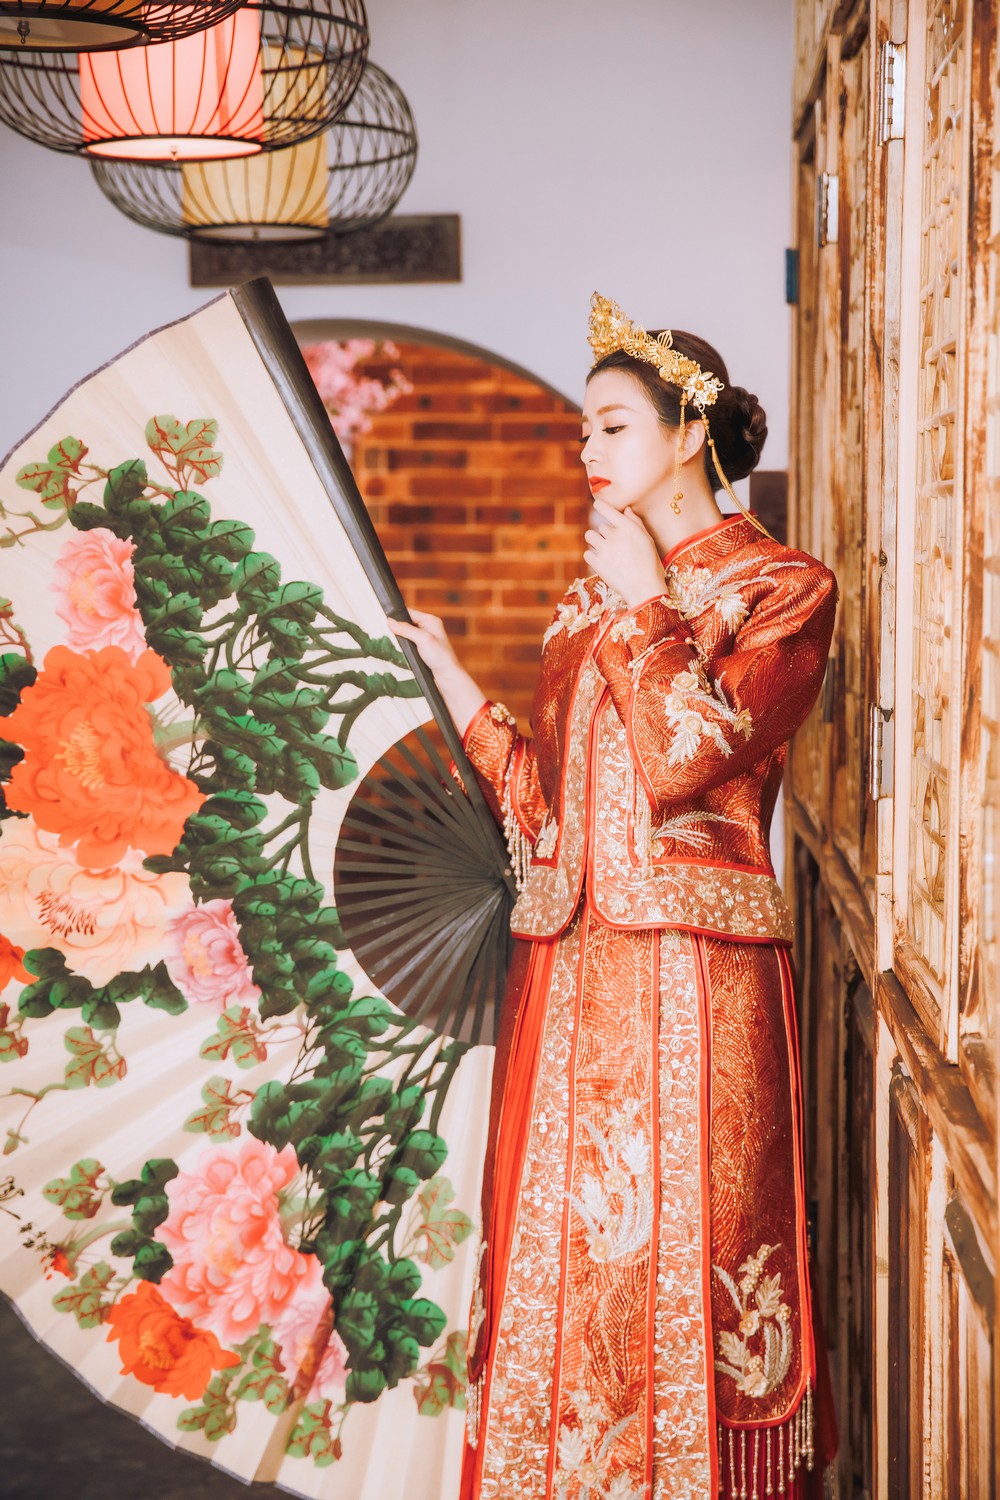 中式禮服,中式婚紗,龍鳳褂,秀禾服,旗袍,中式旗袍,中式婚紗照,中式婚紗攝影,中式婚紗風格,中式禮服婚紗